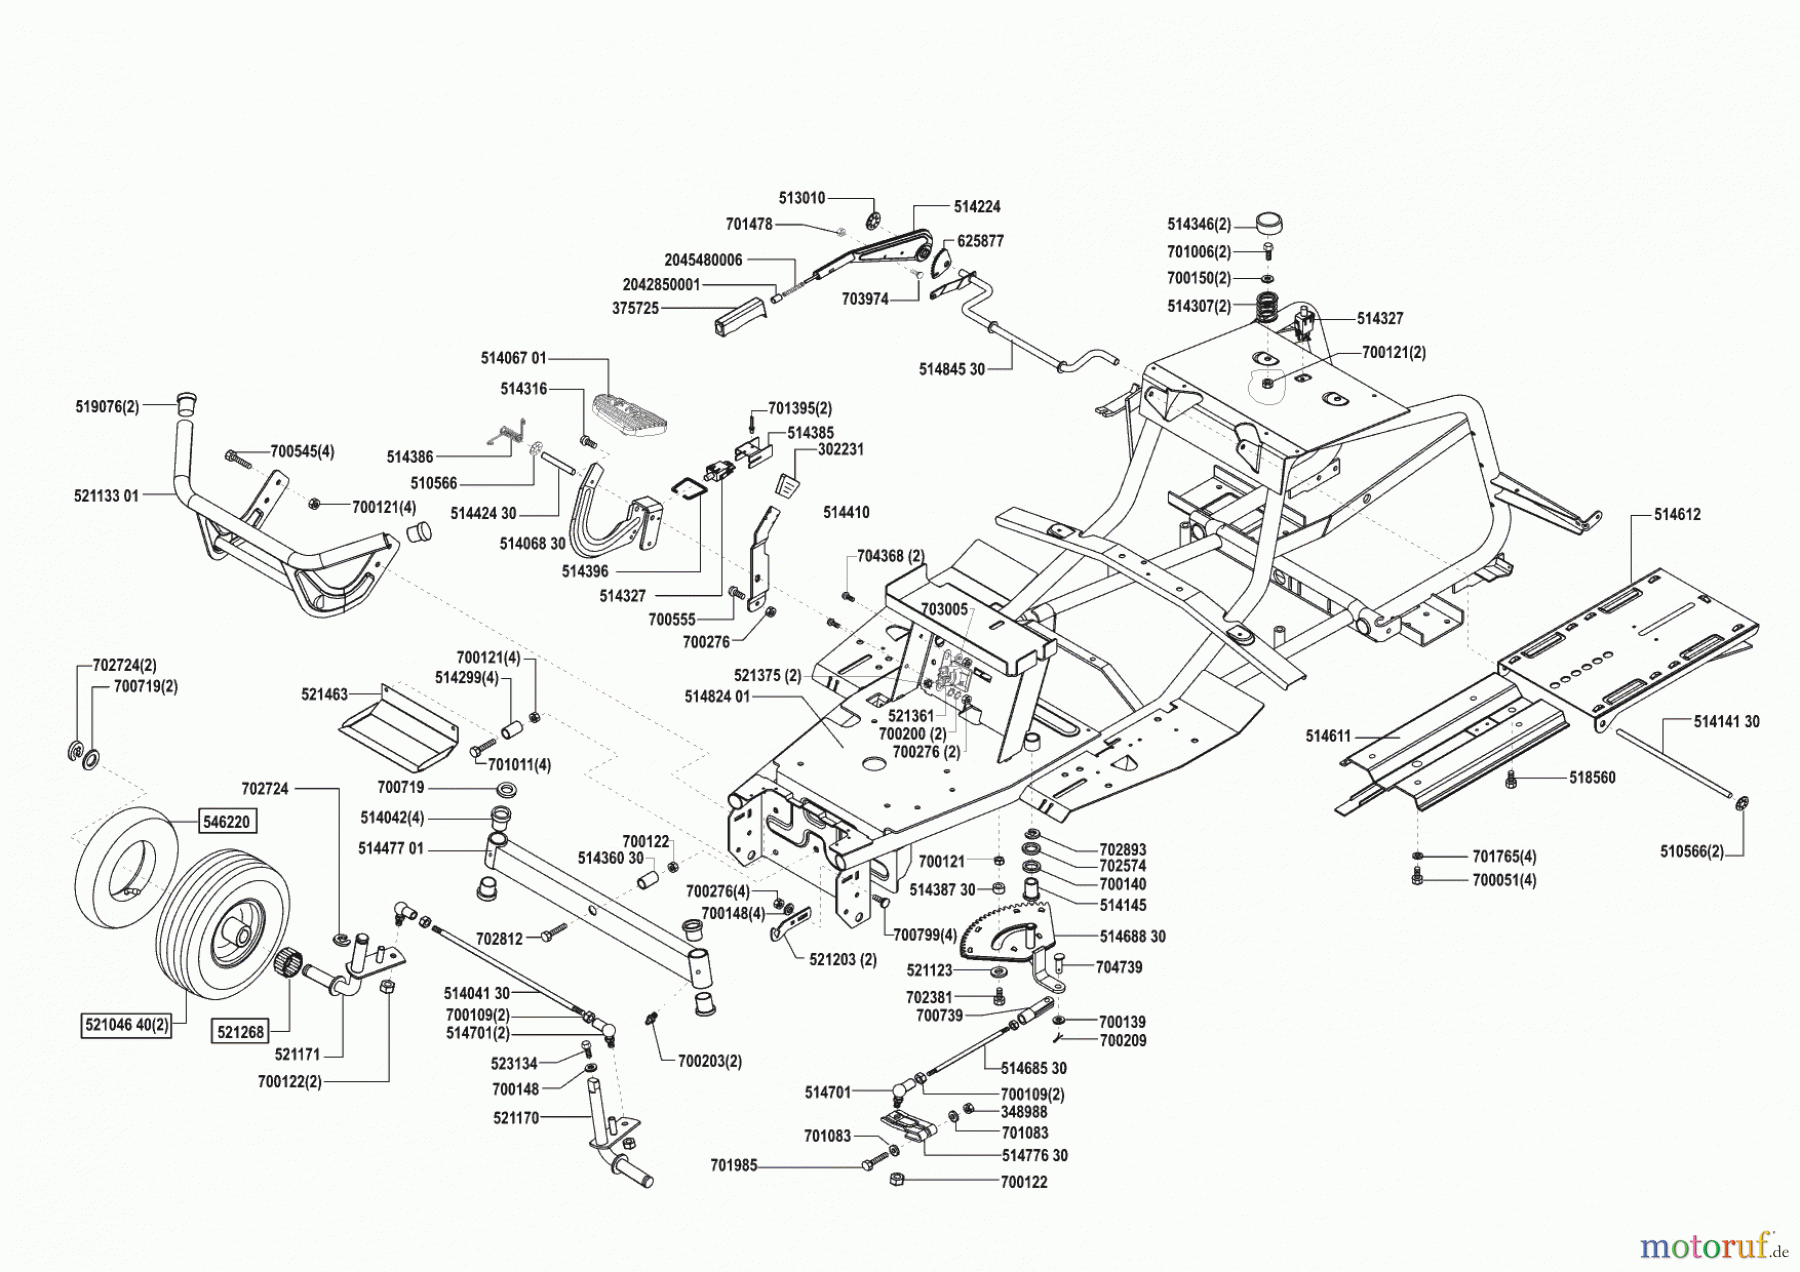  Concord Gartentechnik Rasentraktor T17-102 HD vor 02/2000 Seite 2